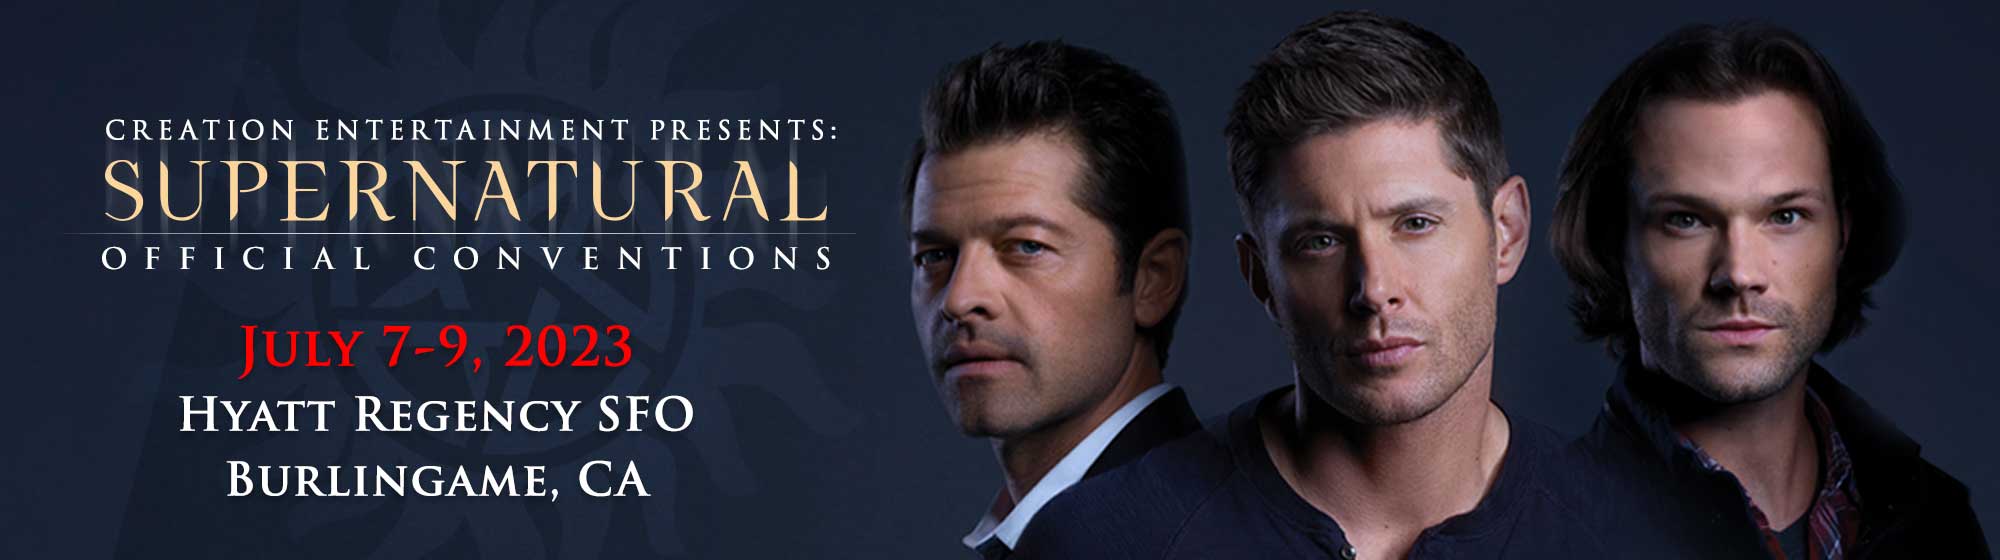 Creation Supernatural Offical Fan Convention starring Jensen Ackles, Jared  Padalecki, Misha Collins. Burlingame, CA July 7 - 9, 2023